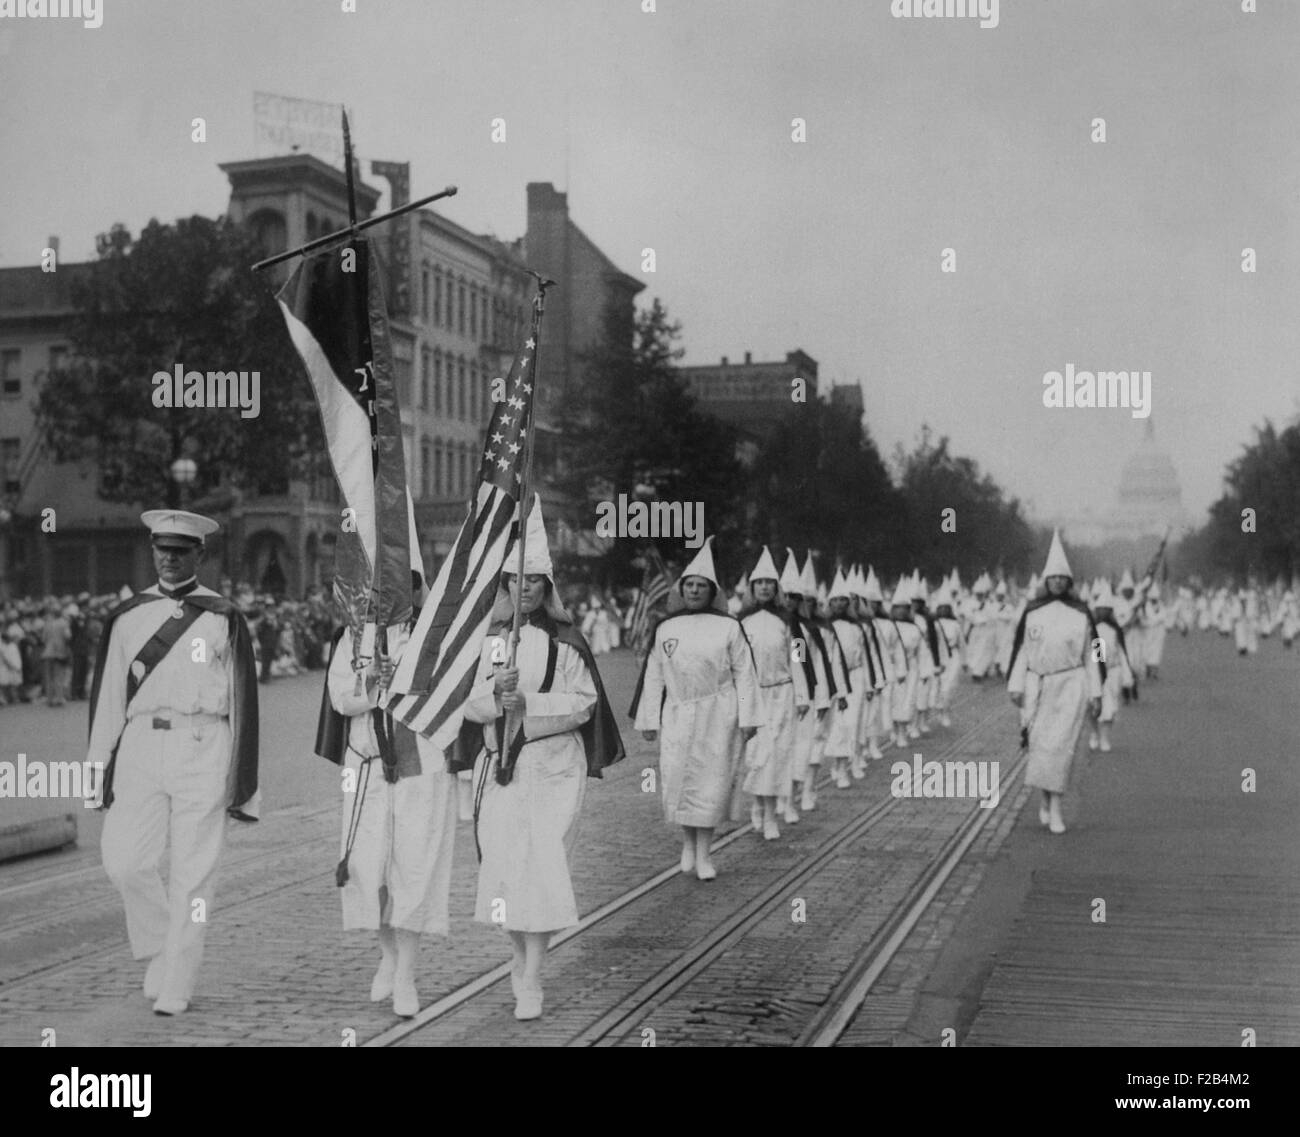 Weibliche Mitglieder führen eine 1928 Ku Klux Klan Parade an der Pennsylvania Avenue. Nach D. W. Griffith Film "Birth of A Nation" Porträtierten Ku Klux Klan als Helden, der KKK wurde wiederbelebt und wuchs zu einer geschätzten Mitgliedschaft von 6 auf 3 Millionen auf seinem Höhepunkt im Jahre 1925. -(BSLOC 2015 1 205) Stockfoto